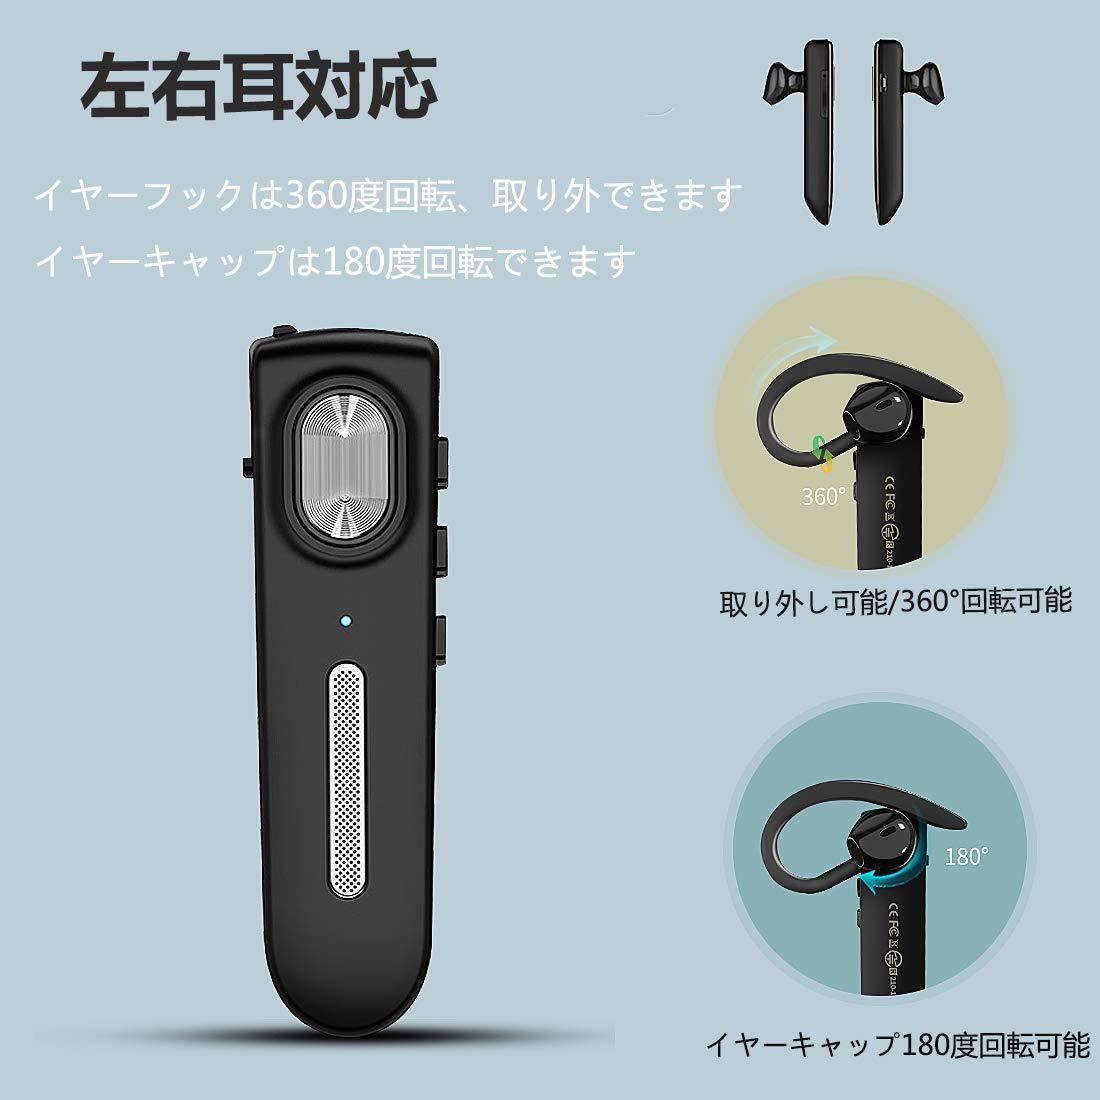 【最安値】Bluetooth ヘッドセット 5.0 日本語音声 ワイヤレス 片耳 マイク内蔵 日本技適マーク取得 150mAhバッテリー 22時間連続再生 _画像6